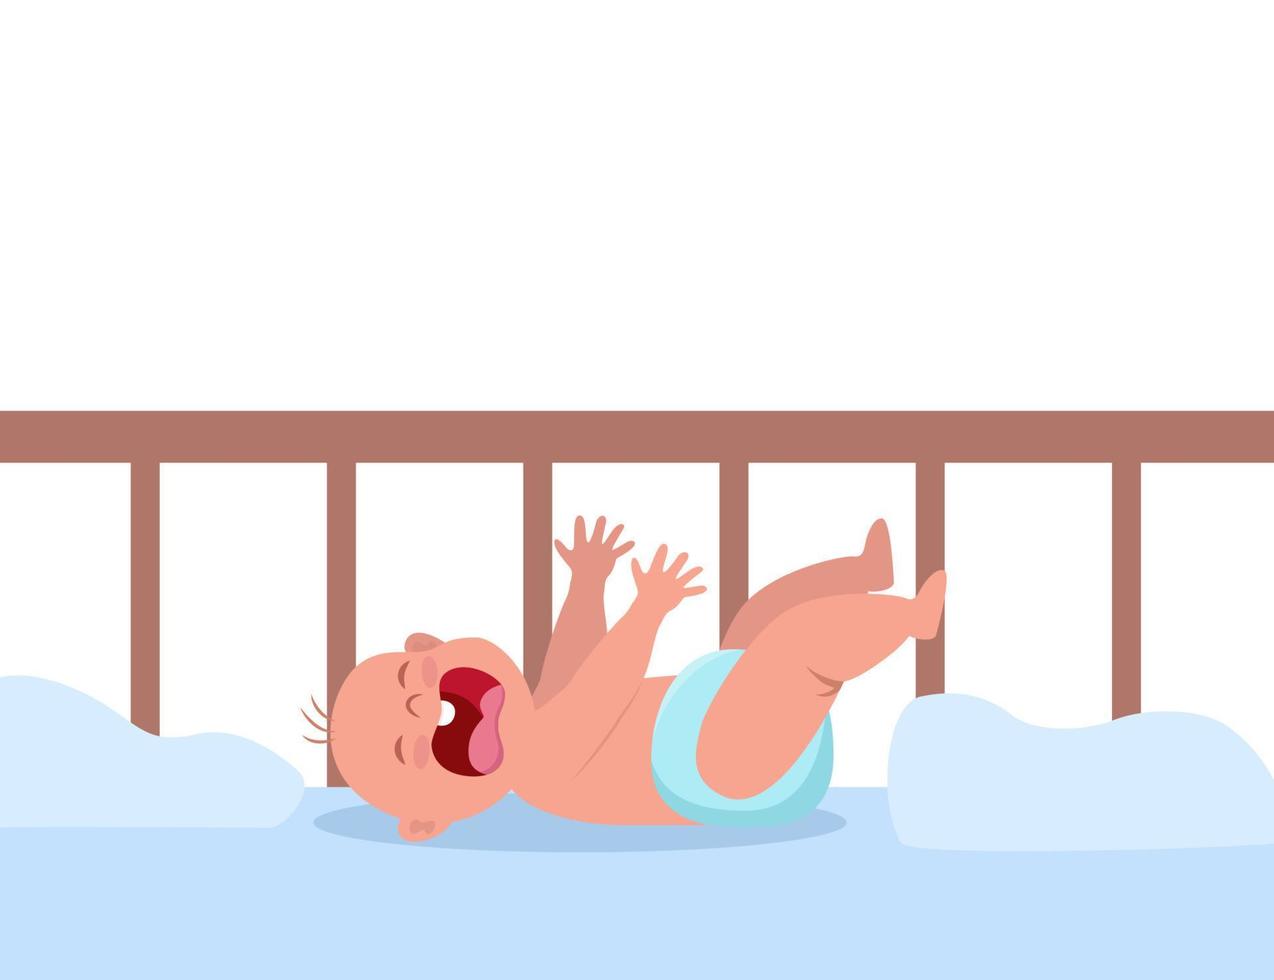 weinig baby huilen hesterisch in wieg. huilen baby leugens en trekt omhoog de handvatten. weinig kind wezen ongelukkig. vlak vector illustratie.